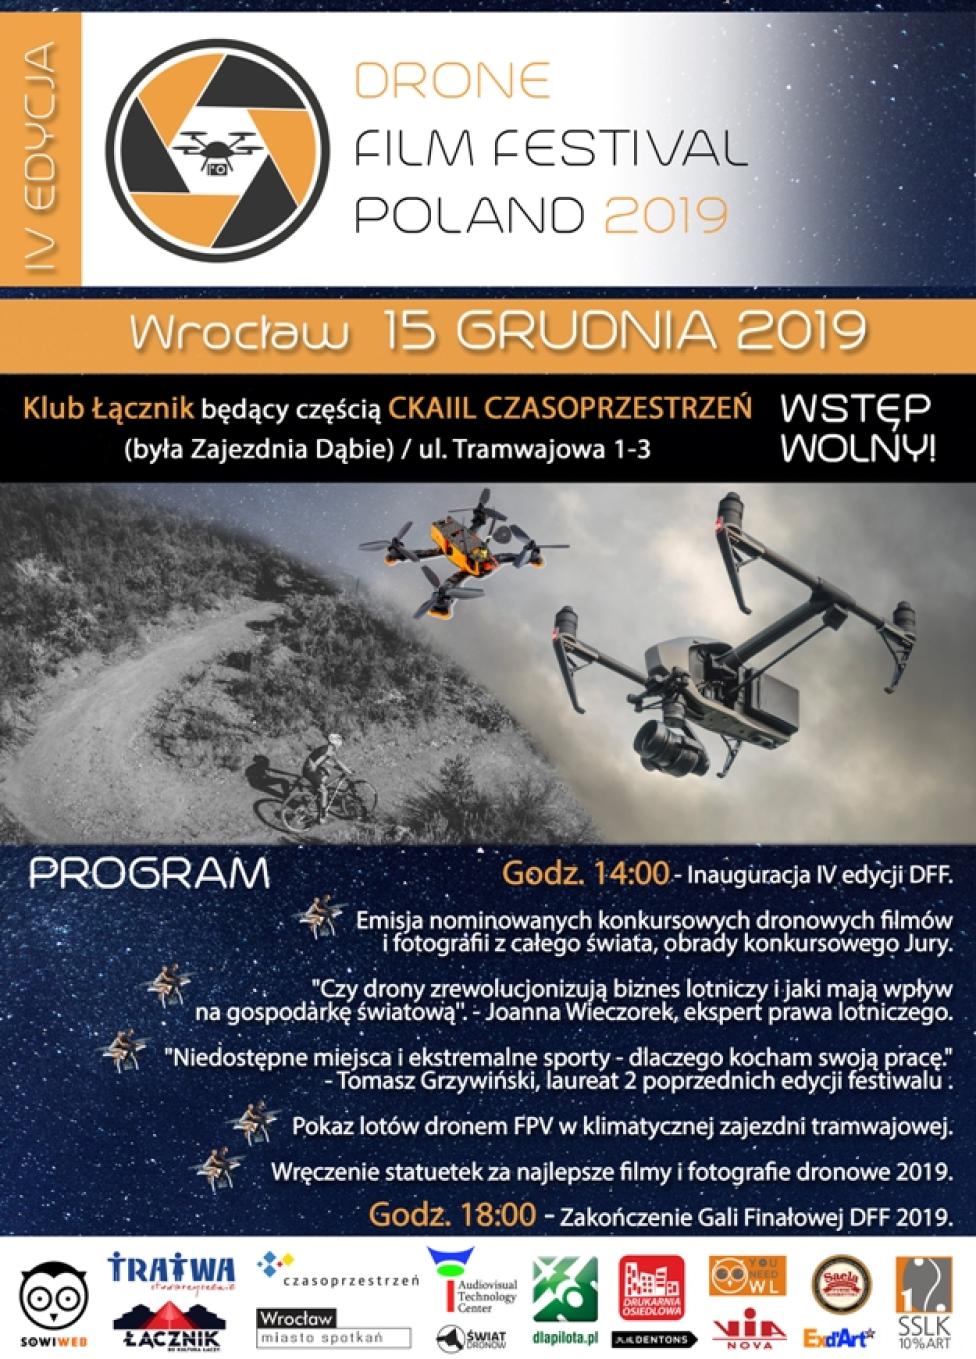 Drone Film Festival Poland 2019 – zaproszenie na Galę Finałową (fot. dronefilmfestival.eu)